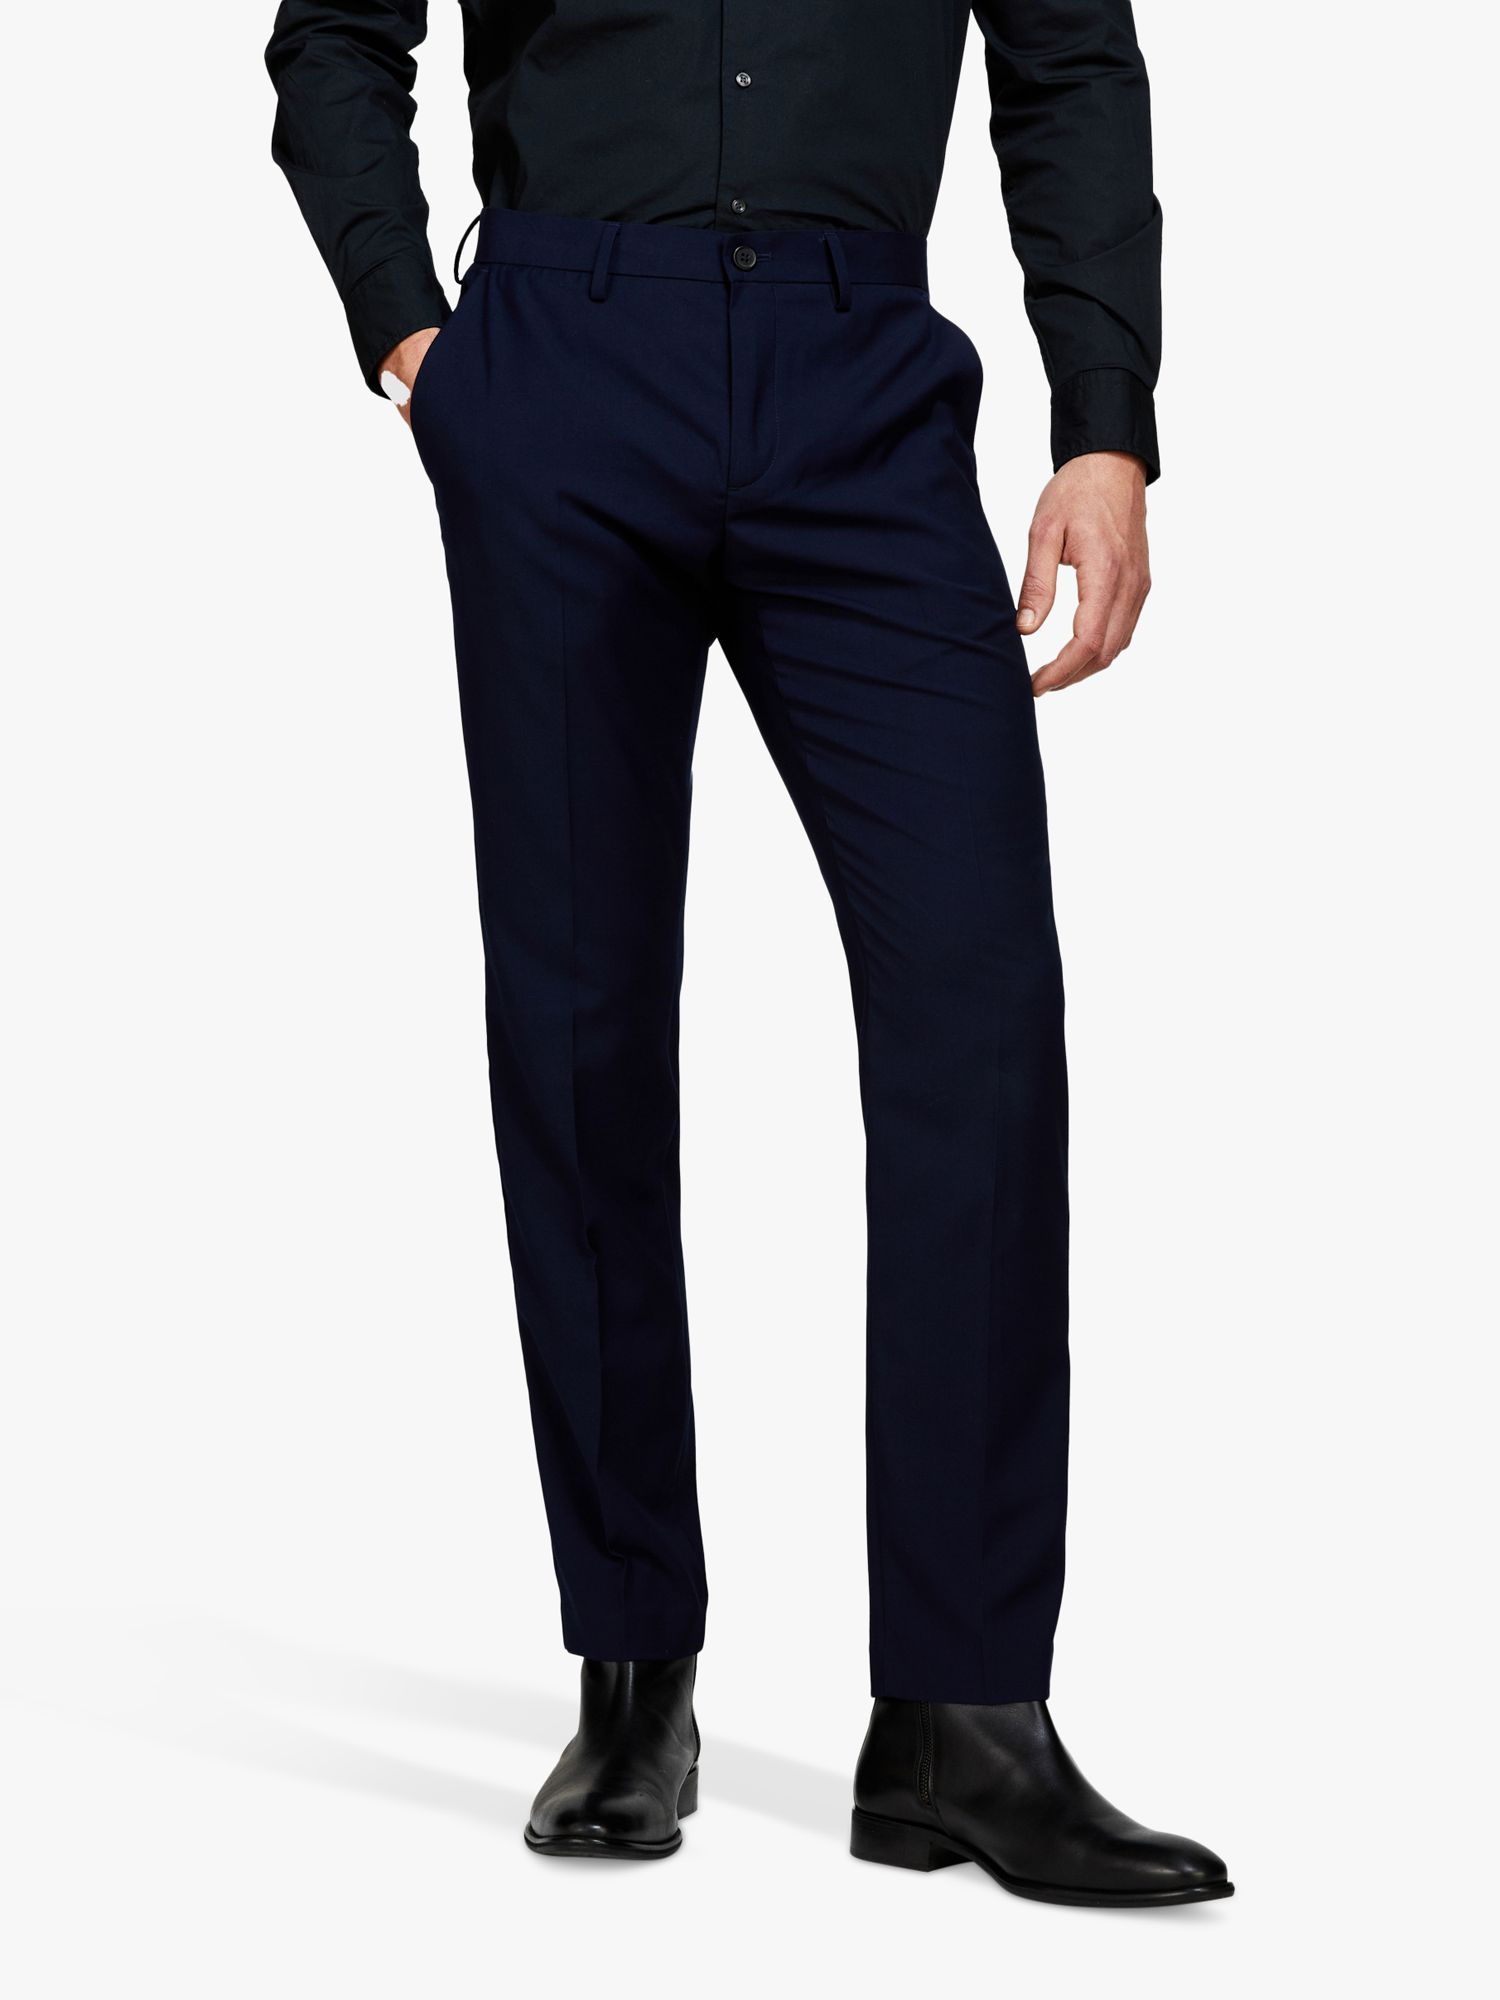 SISLEY Formal Slim Fit Trousers, Navy, 30